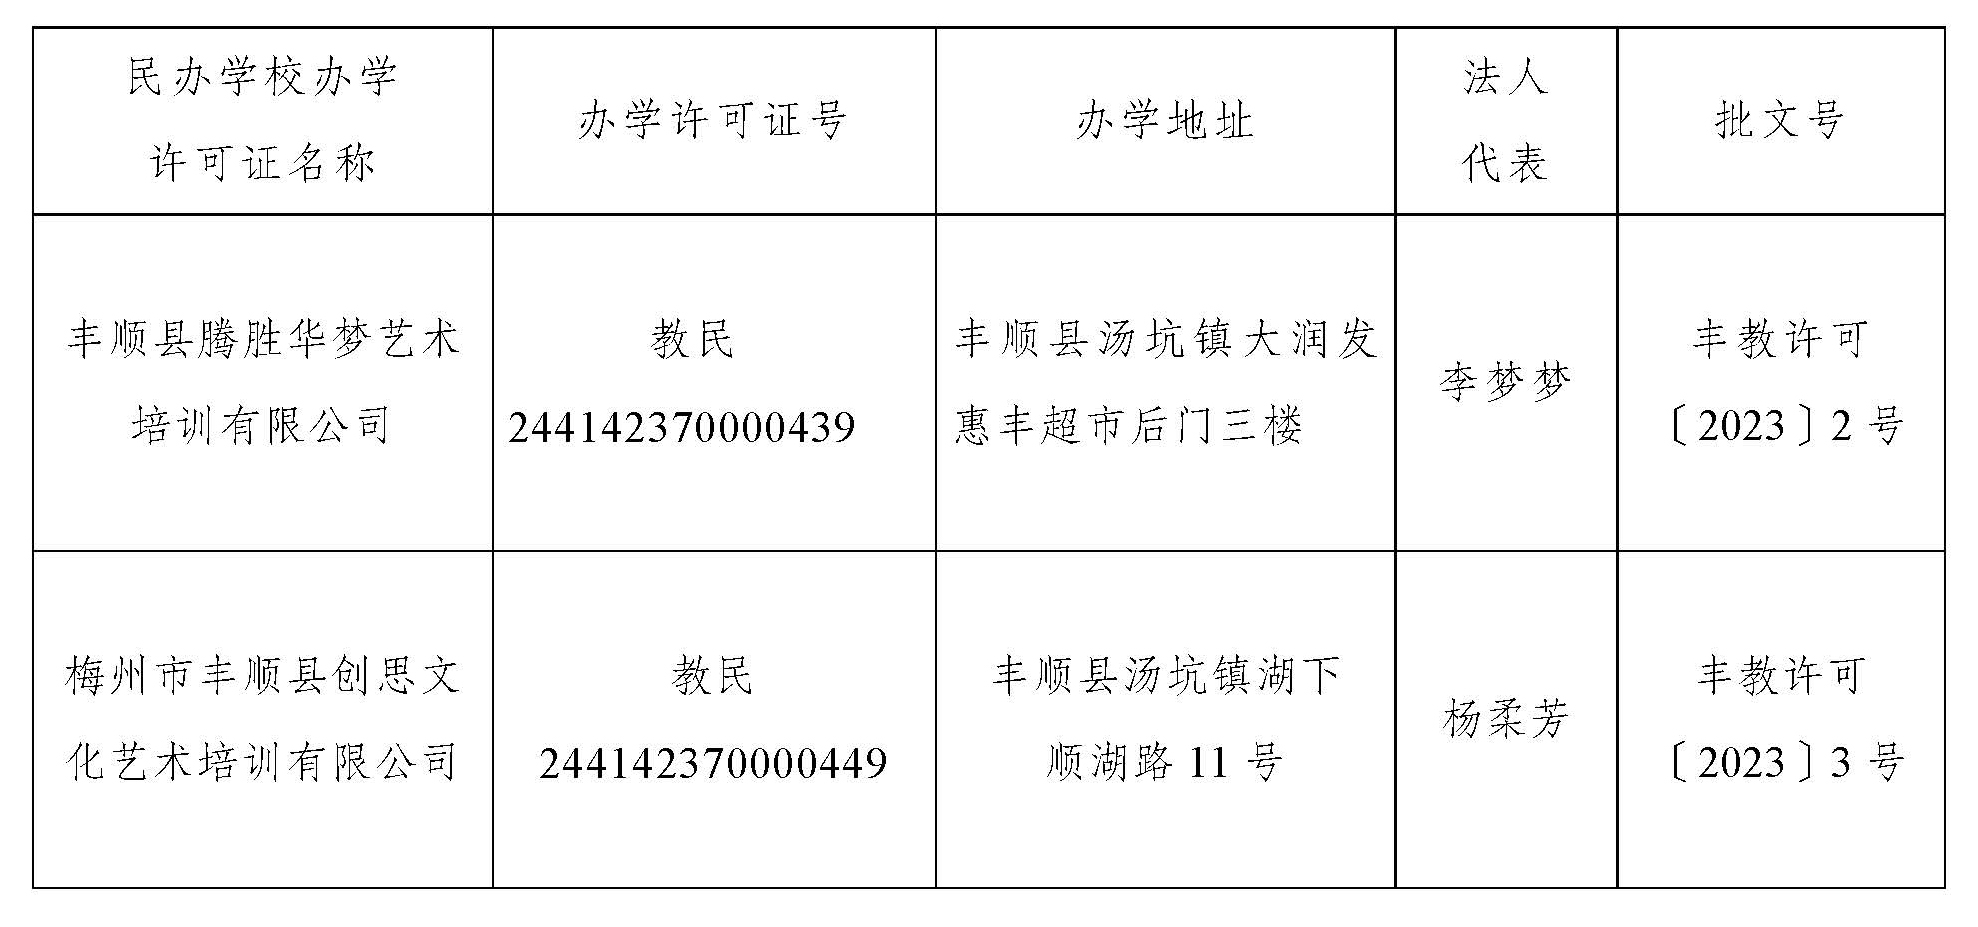 关于准予腾胜华梦艺术培训等二家机构办学许可证的公告_页面_2.jpg